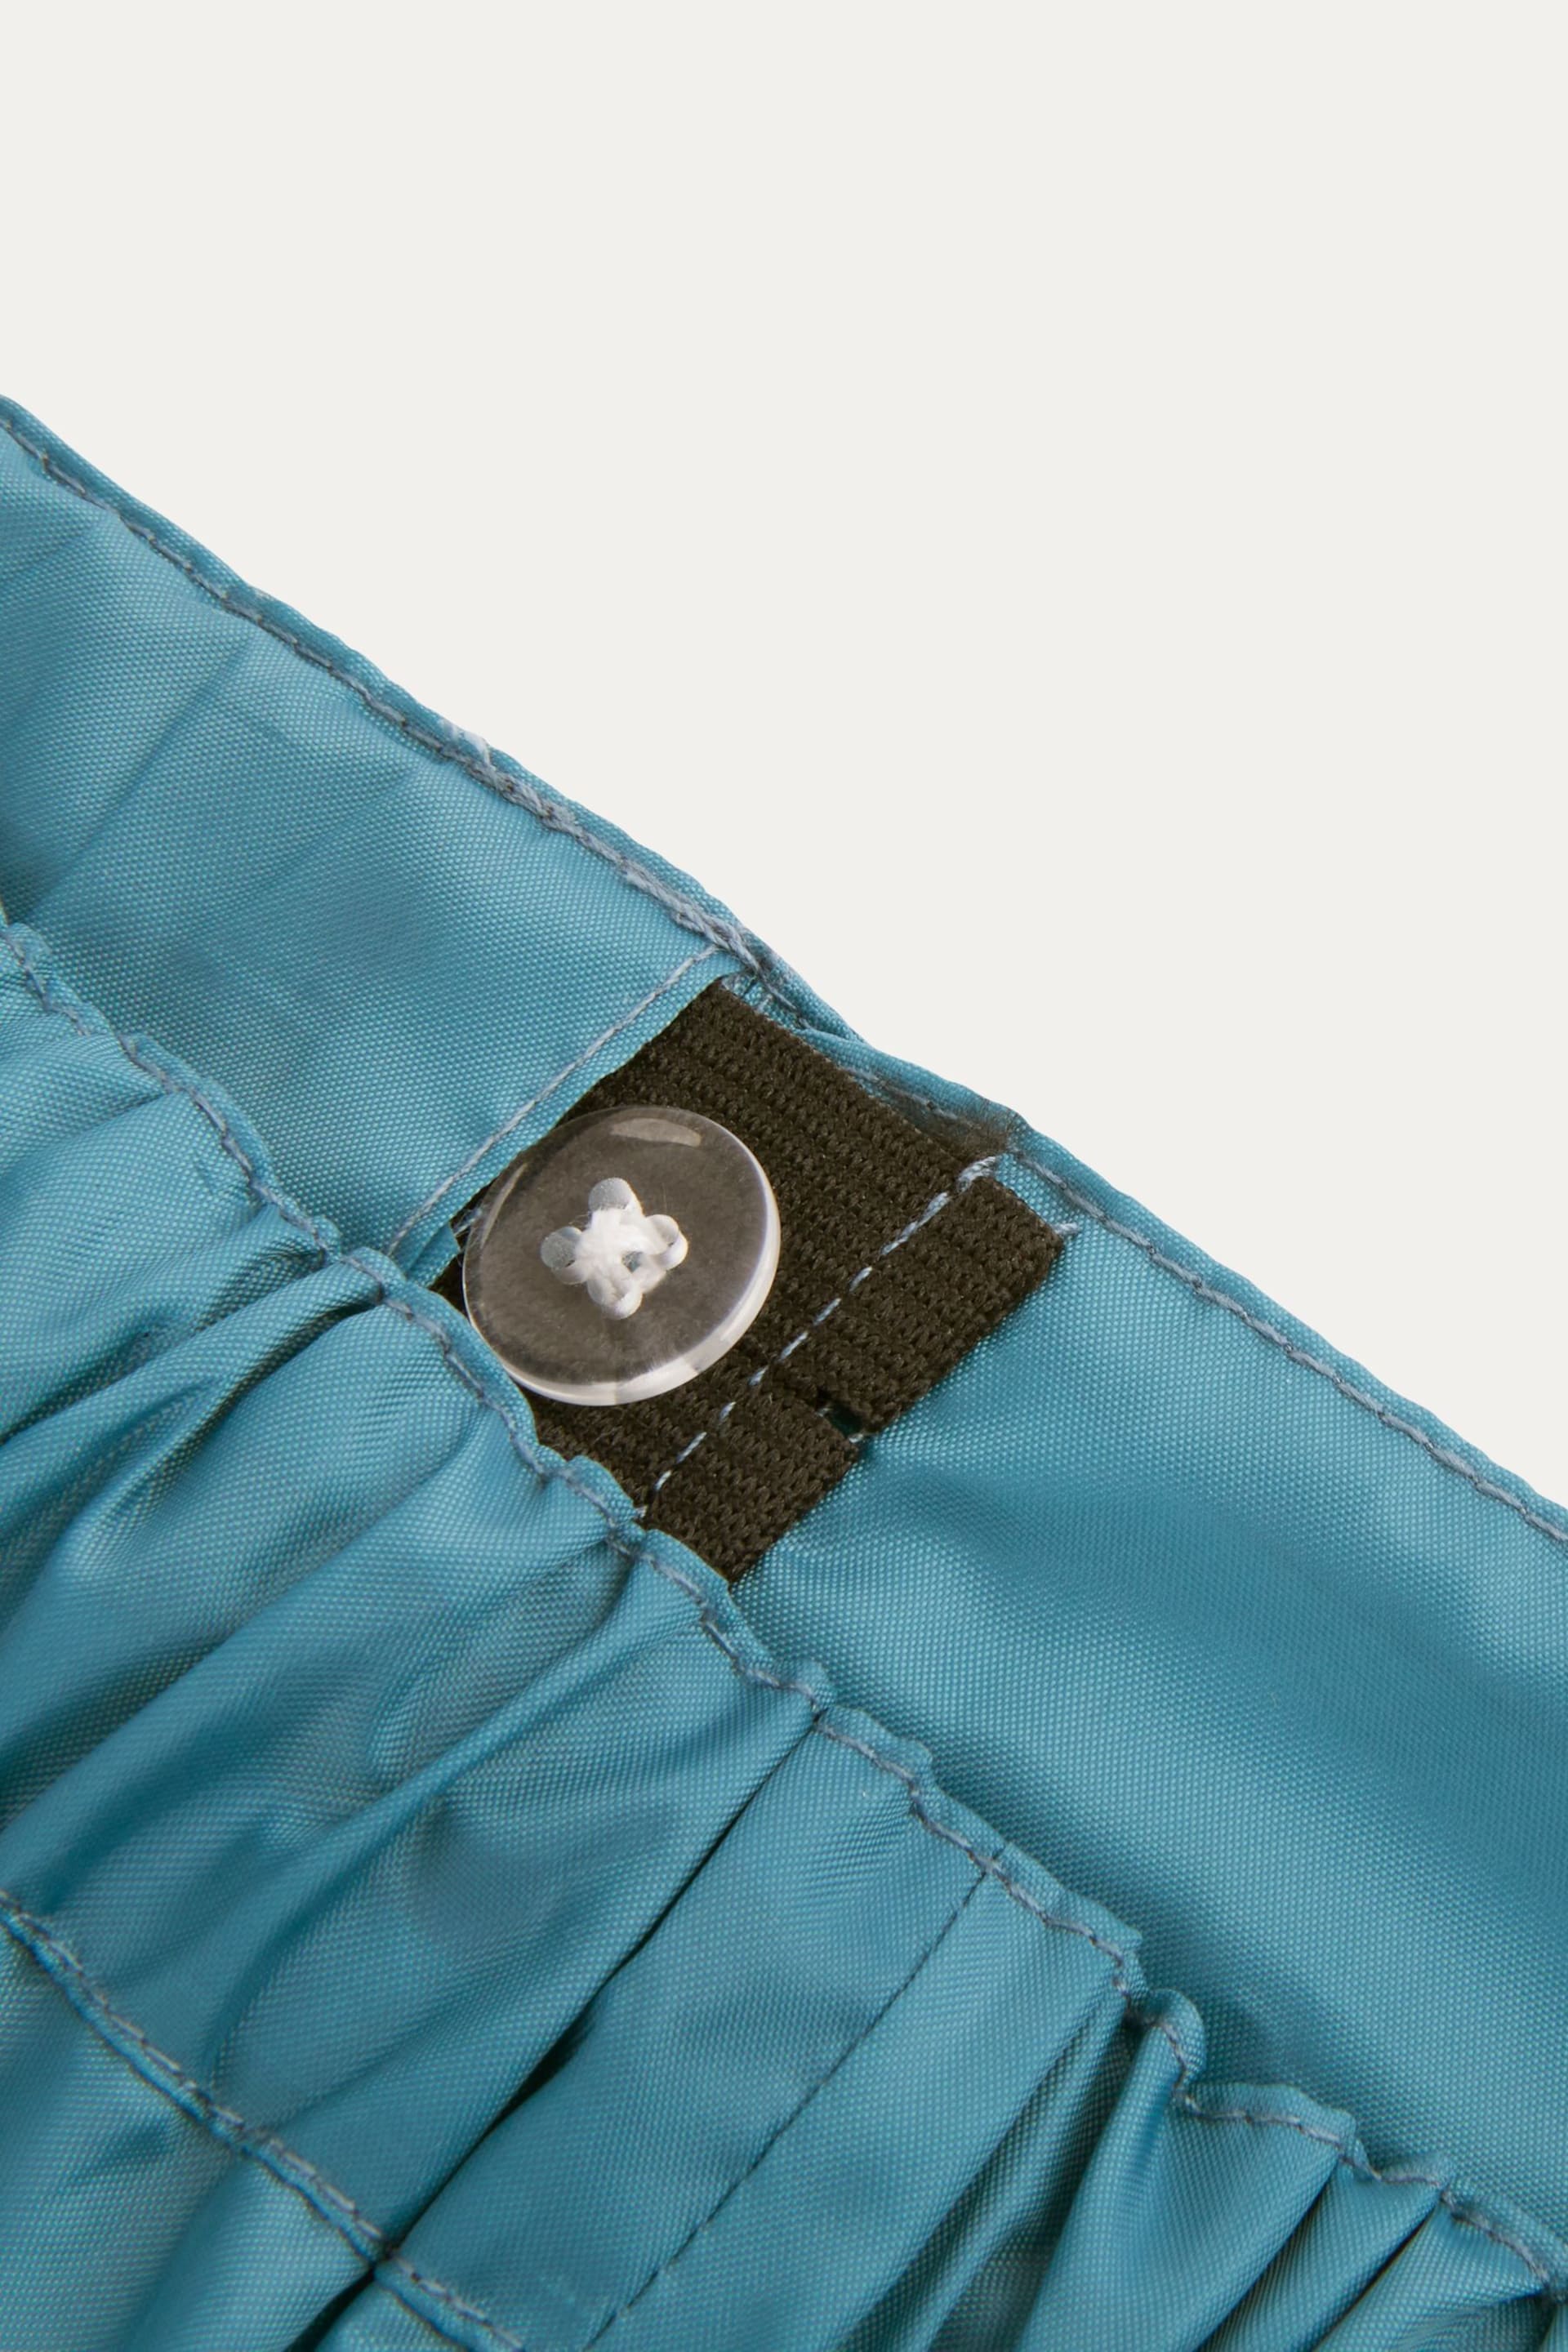 KIDLY Unisex Waterproof Packaway Trousers - Image 4 of 4